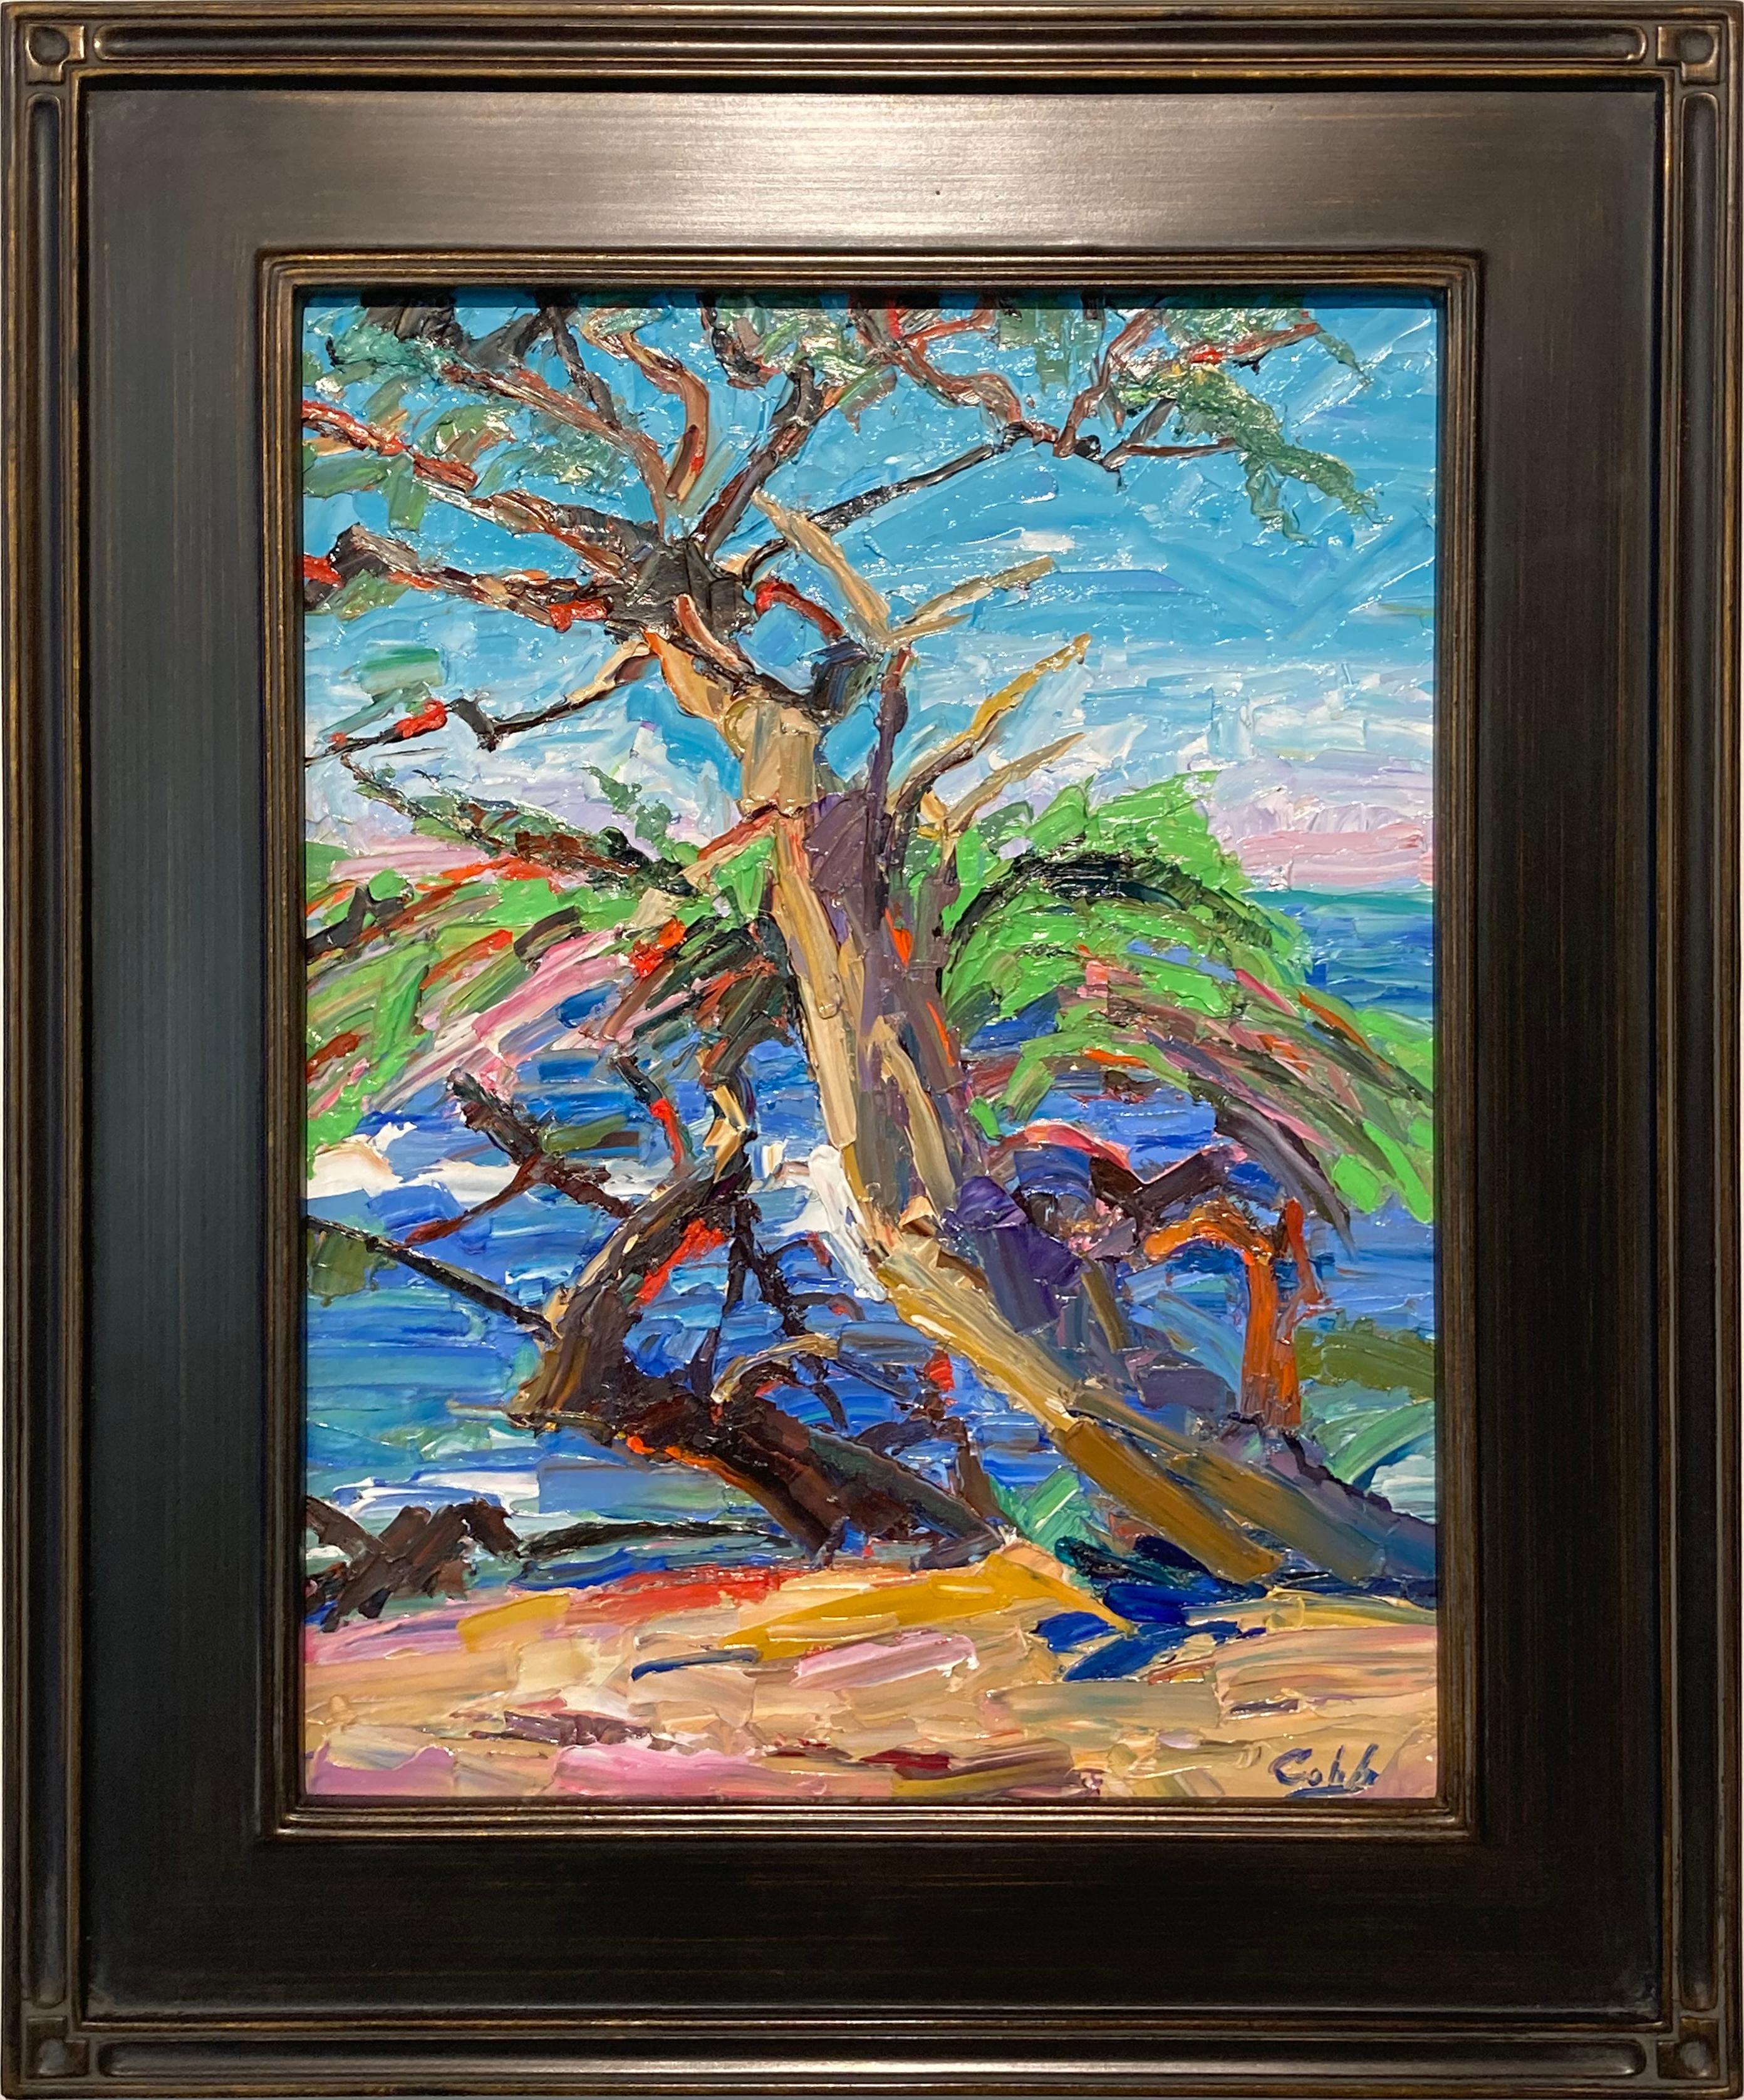 Landscape Painting Jim Cobb - Peinture à l'huile sur panneau de gesso « Cypress Point » de James Cobb